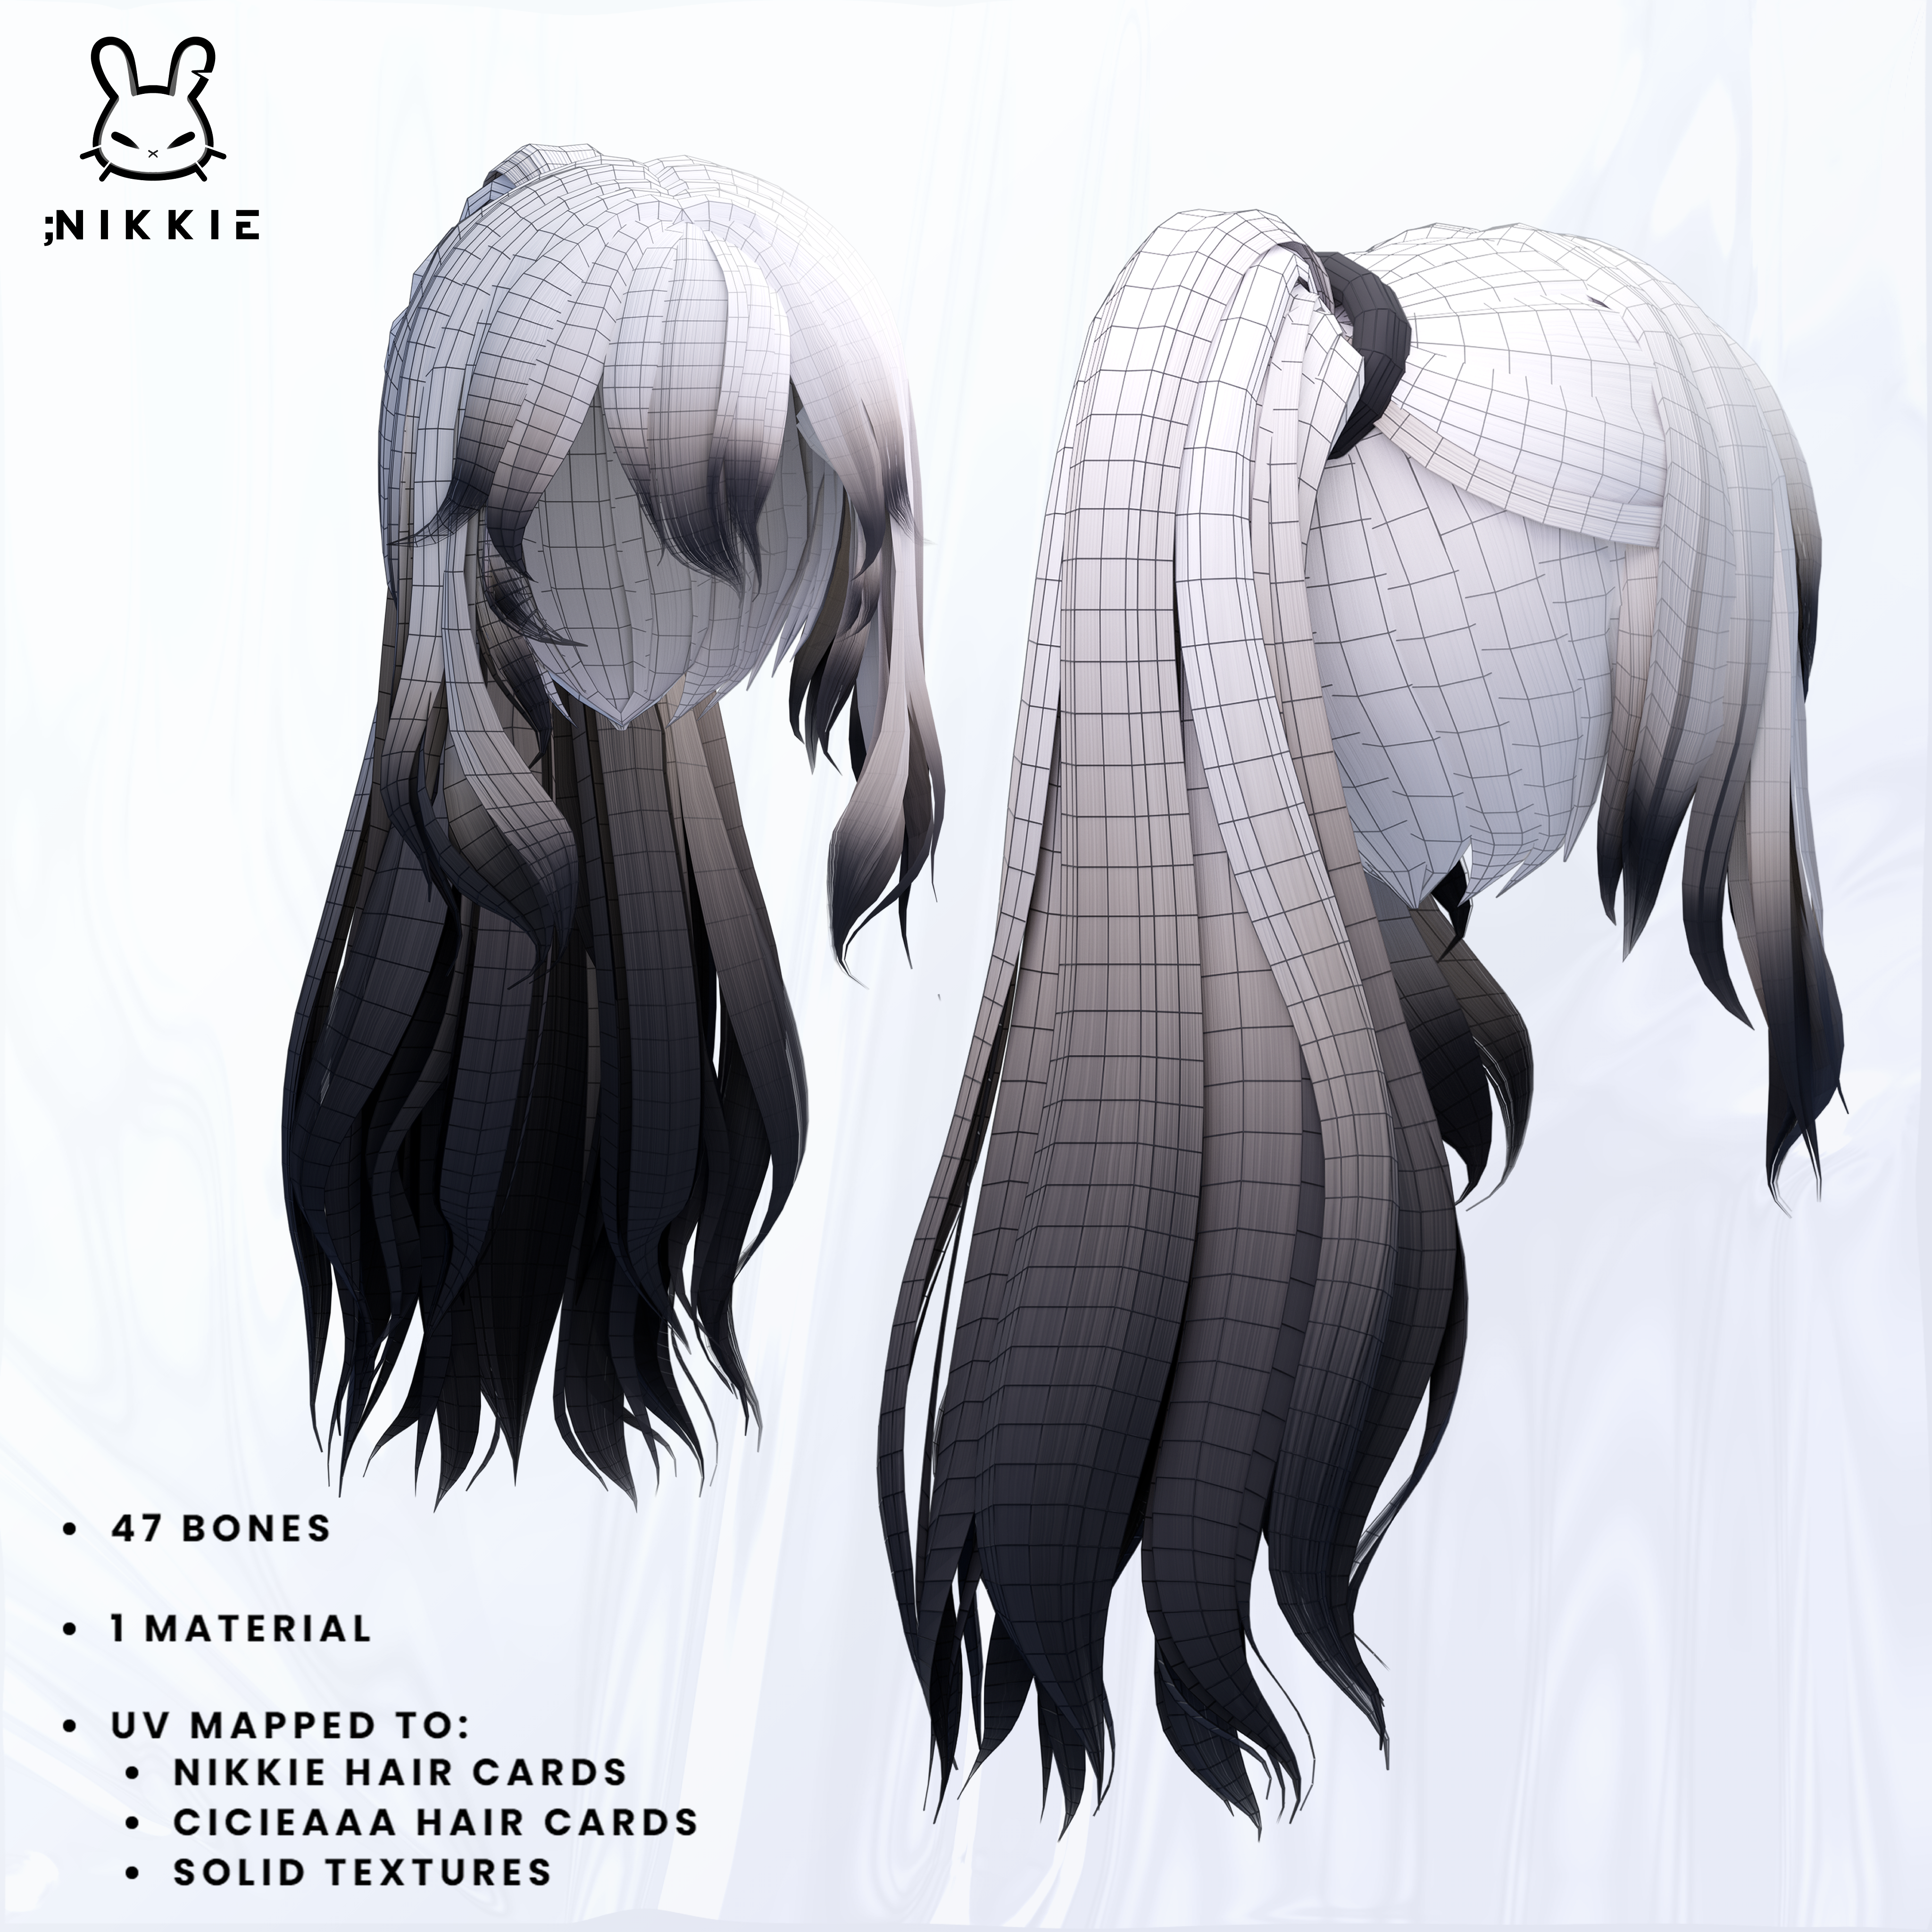 anime hair drawing ponytail